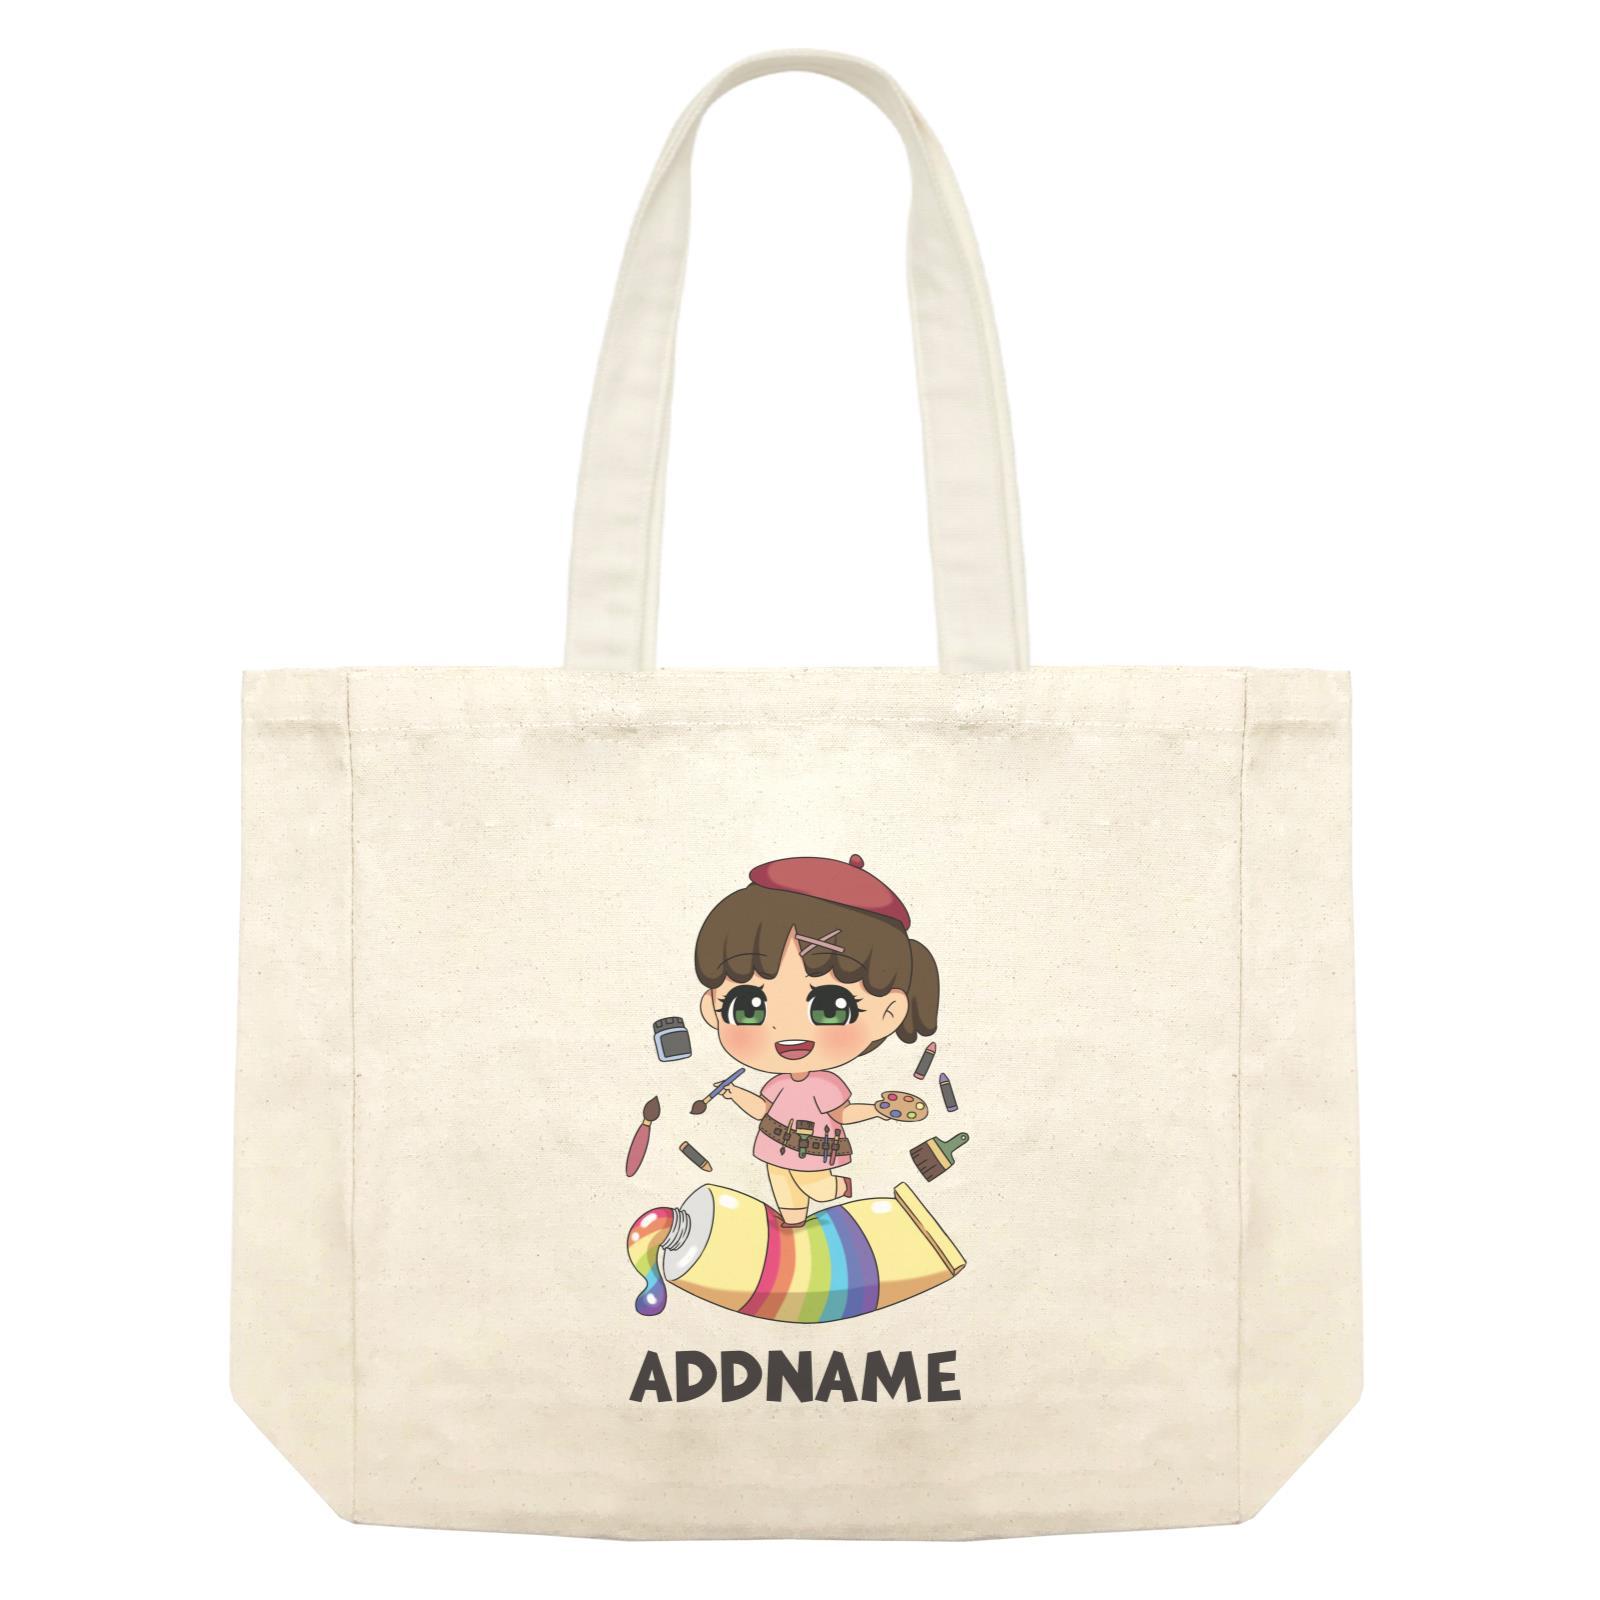 Children's Day Gift Series Artist Little Girl Addname Shopping Bag